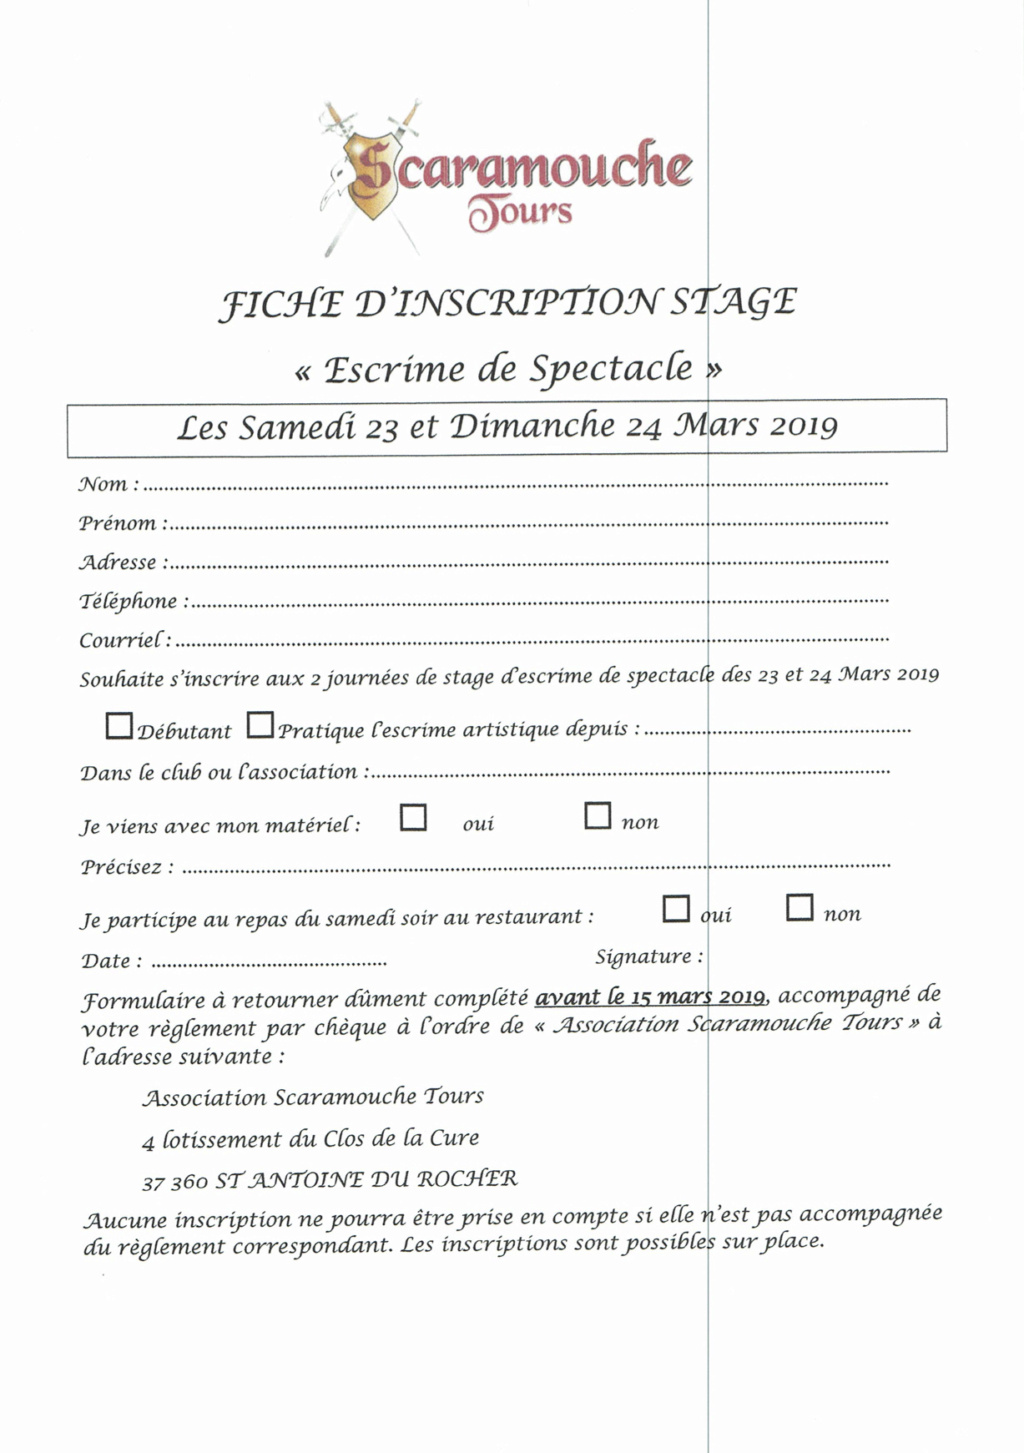 Stage "Escrime de Spectacle" - Scaramouche Tours - 23 & 24 Mars 2019 Scaram10